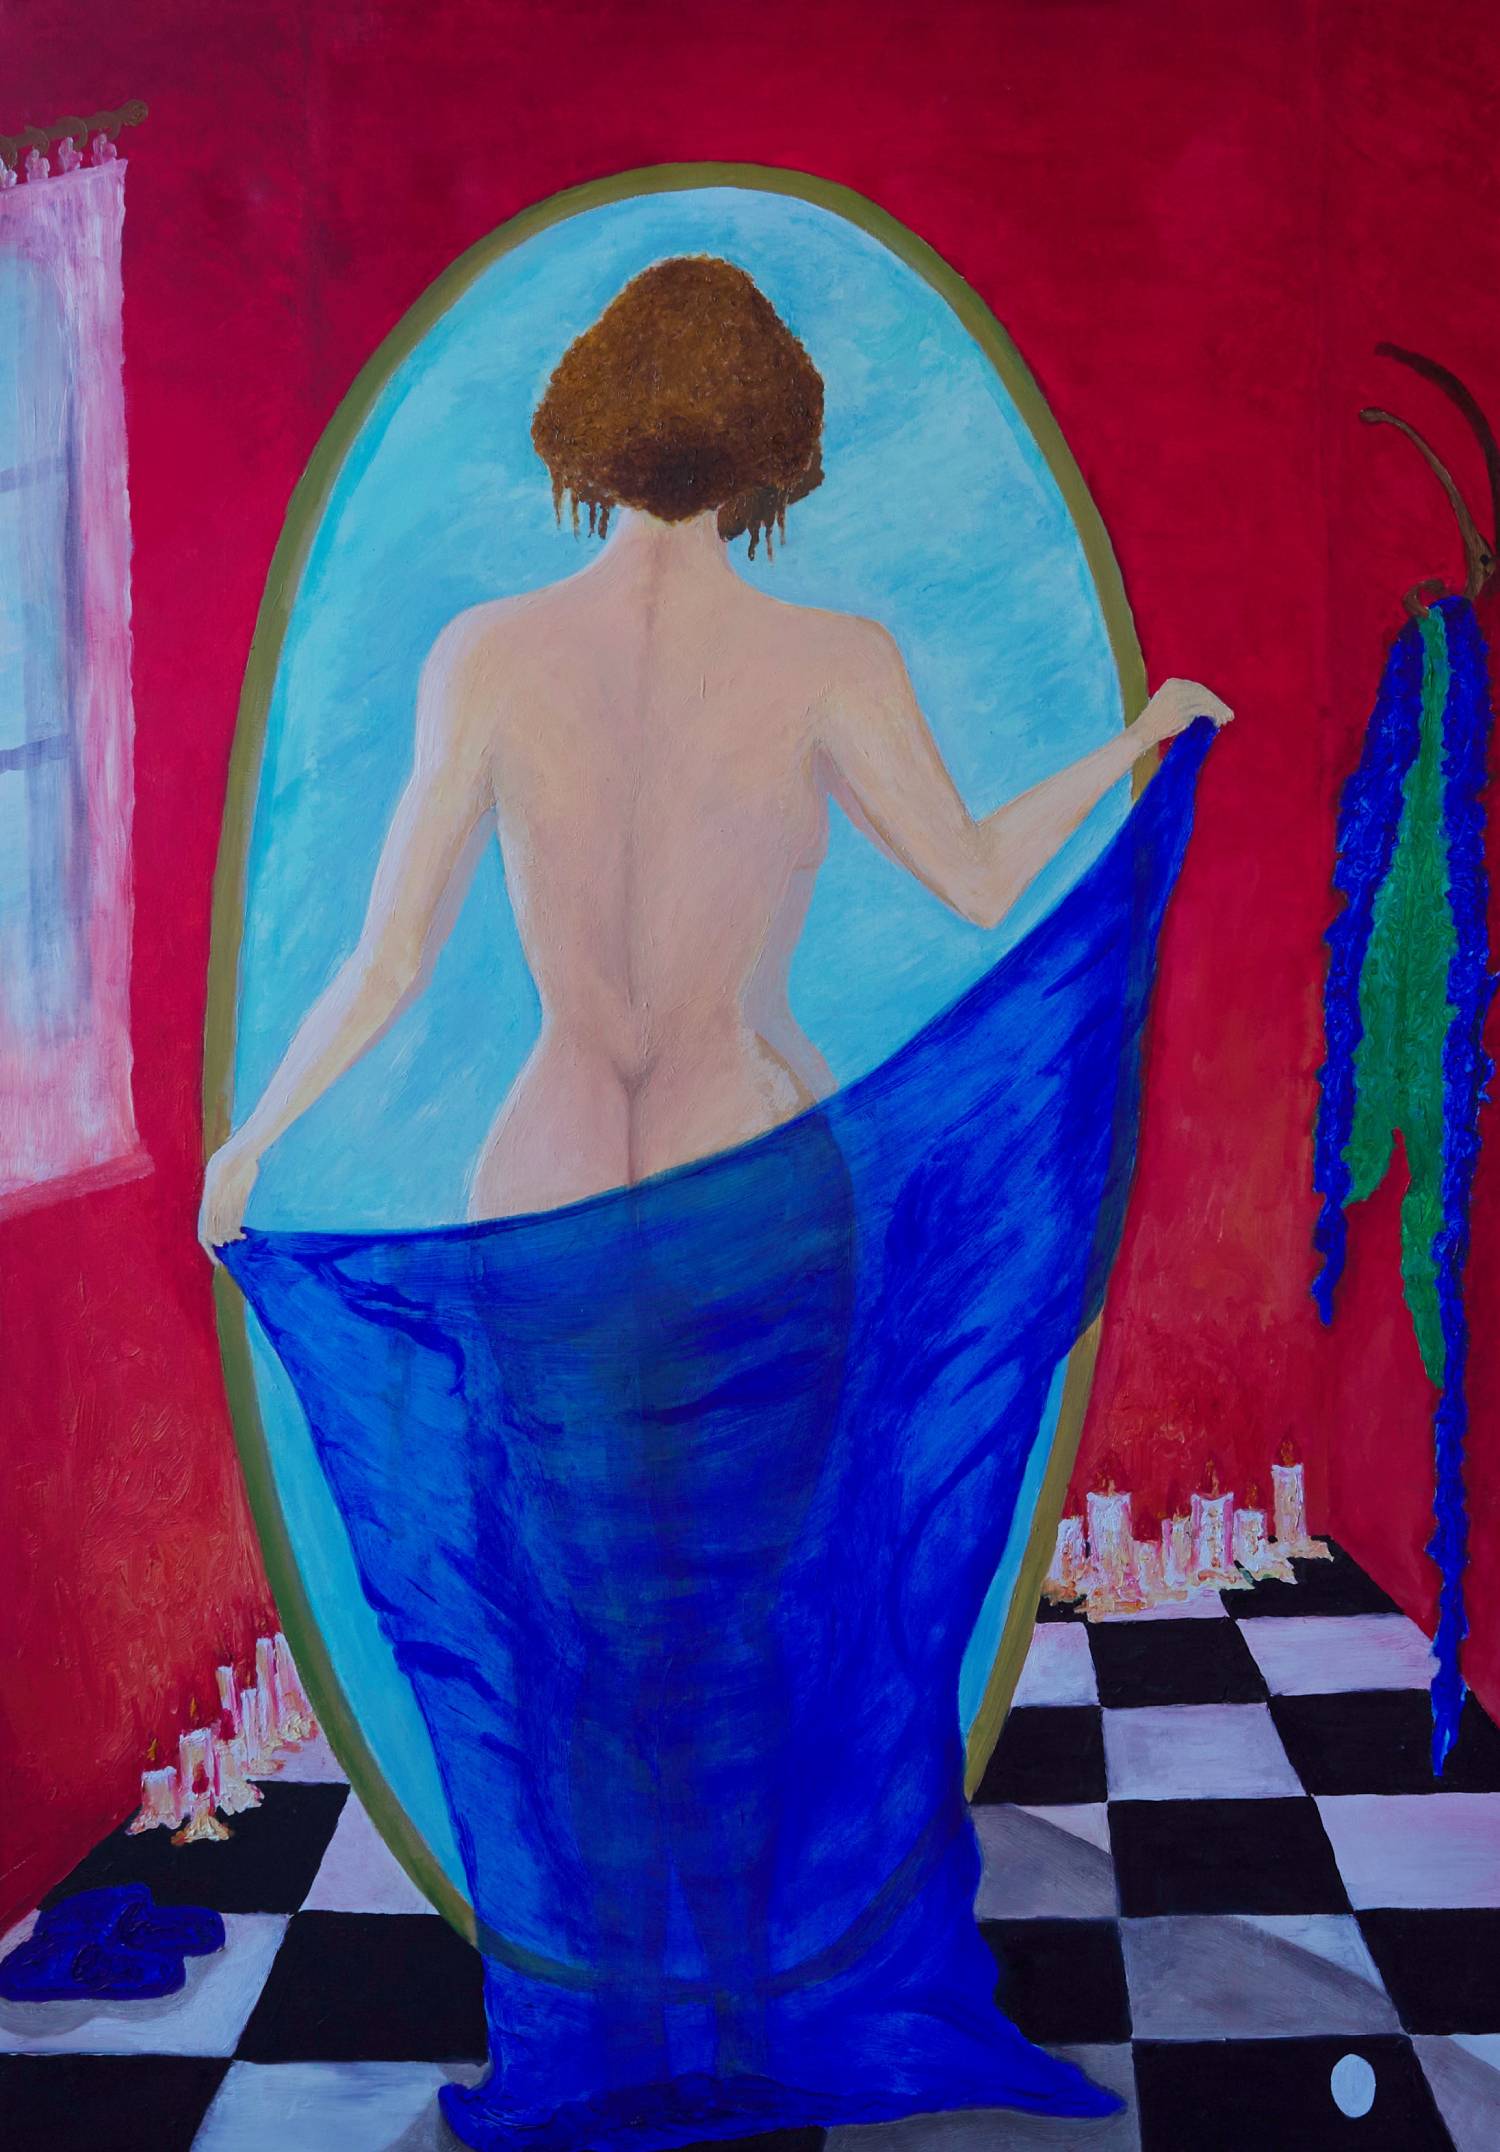 Vendita online opera di pittura a olio dal titolo "Nudo rispecchio" realizzata dall'artista contemporaneo Francesco Diana